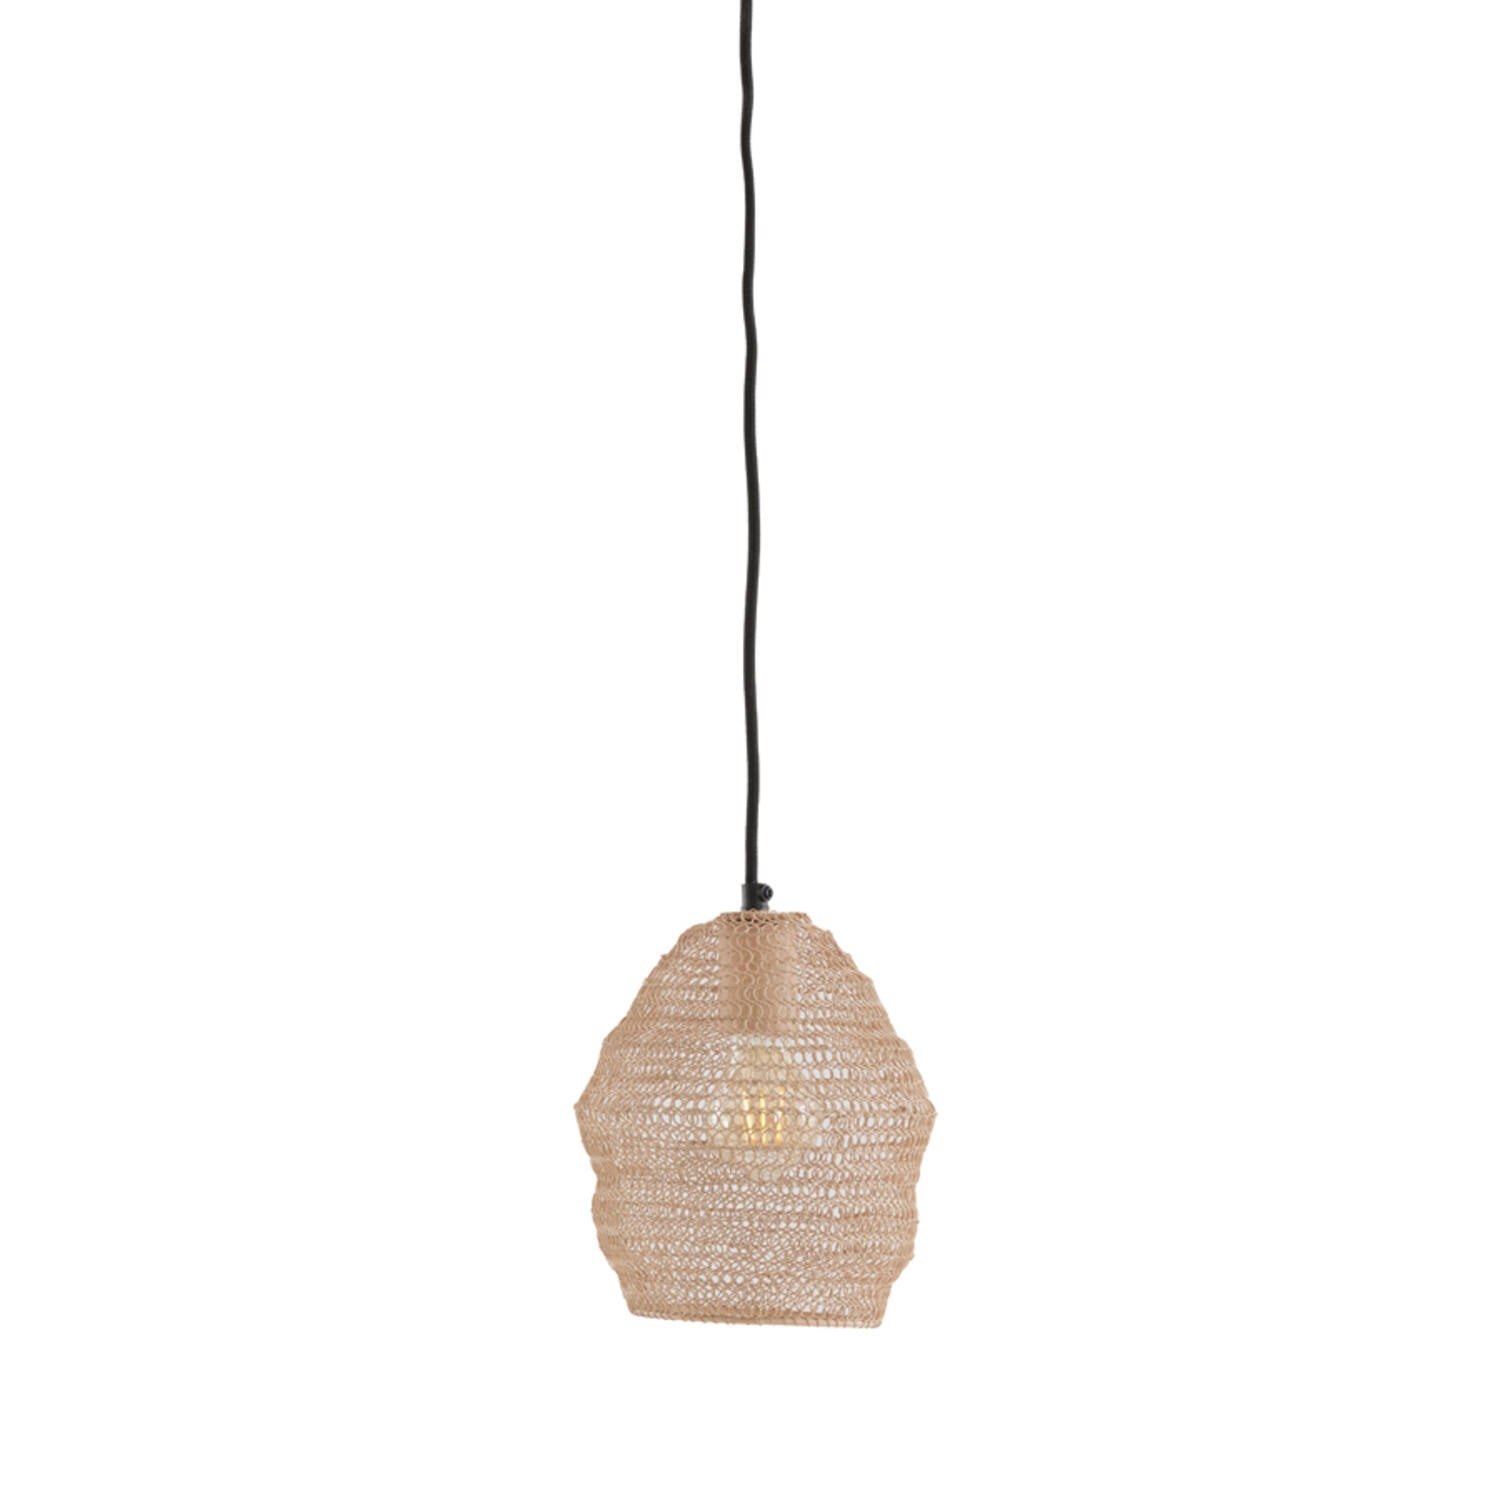 Nola Hanging Lamp - Shiny Black/Antique Bronze/Light Gold Finish